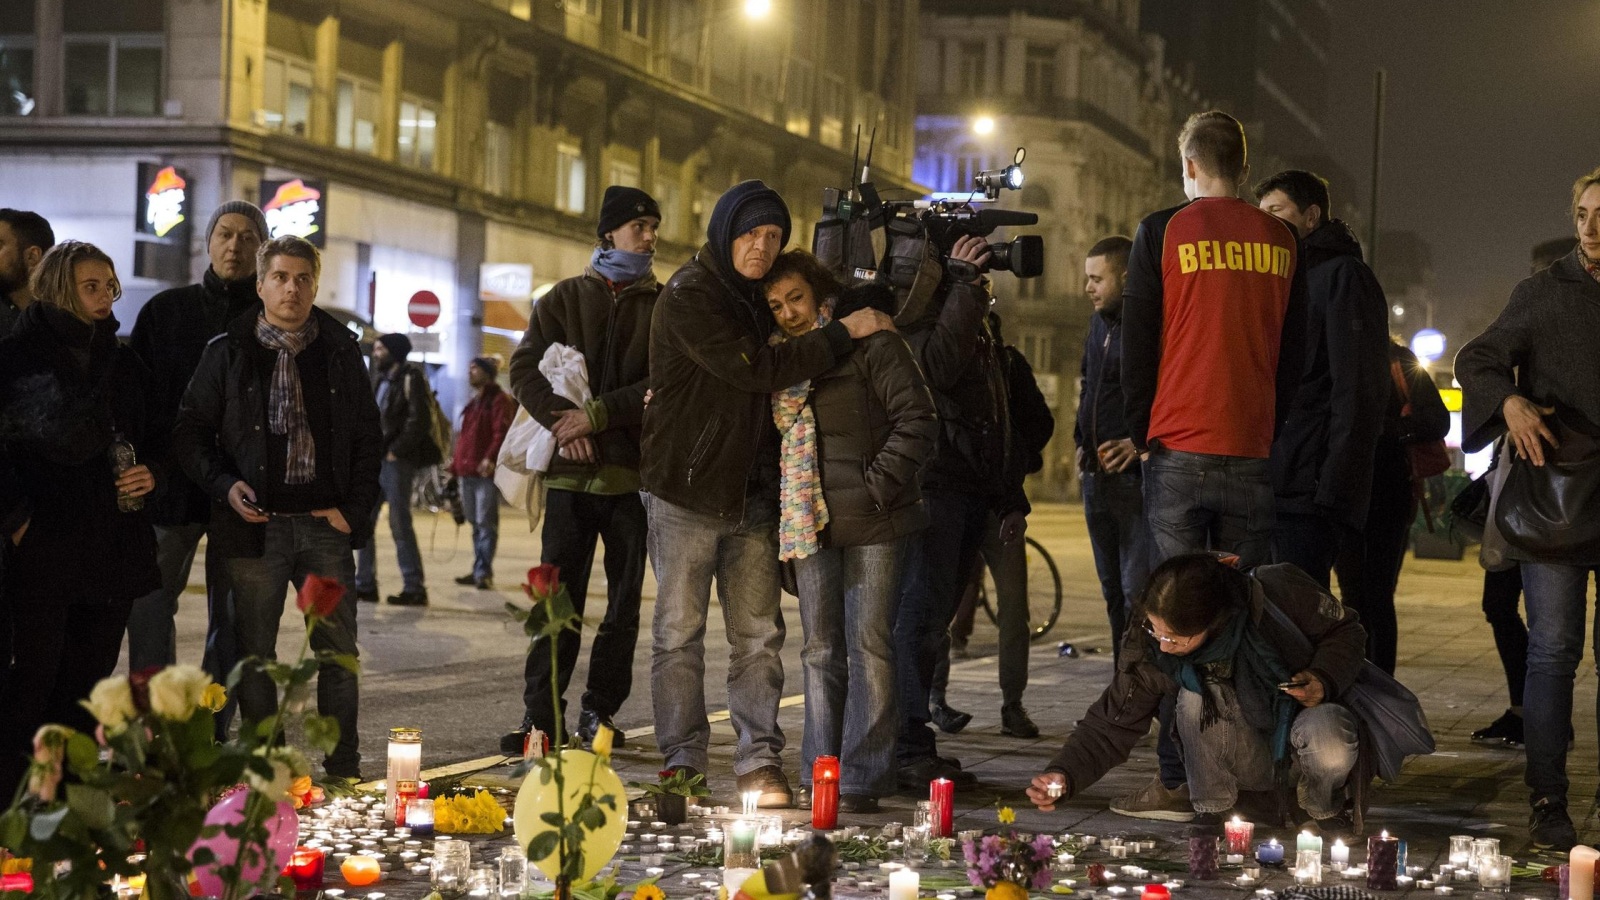 ‪بلجيكيون يوقدون الشموع في إحدى ساحات بروكسل تكريما لضحايا التفجيرات‬  بلجيكيون يوقدون الشموع في إحدى ساحات بروكسل تكريما لضحايا التفجيرات (الأوروبية)